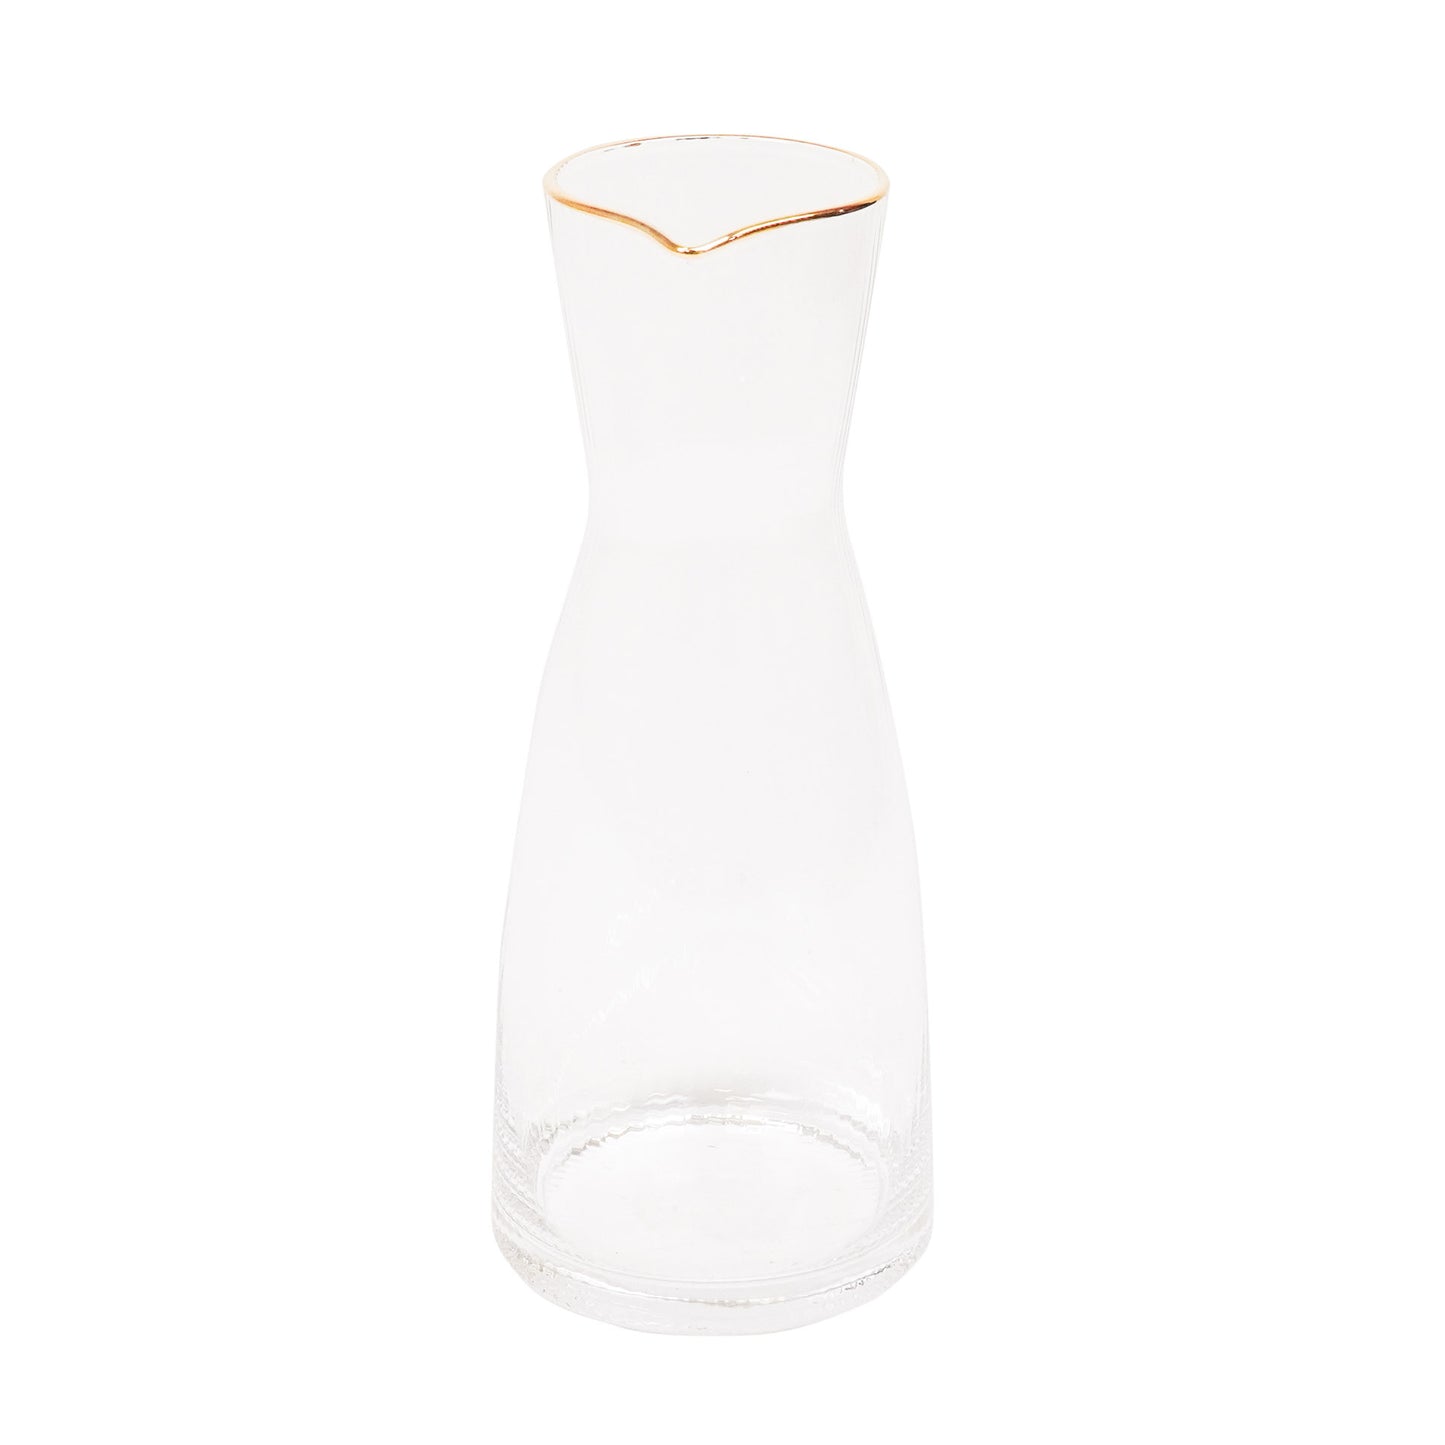 Water Kan - Glas - Helder/Goud - 10,5x10,5x24,5cm